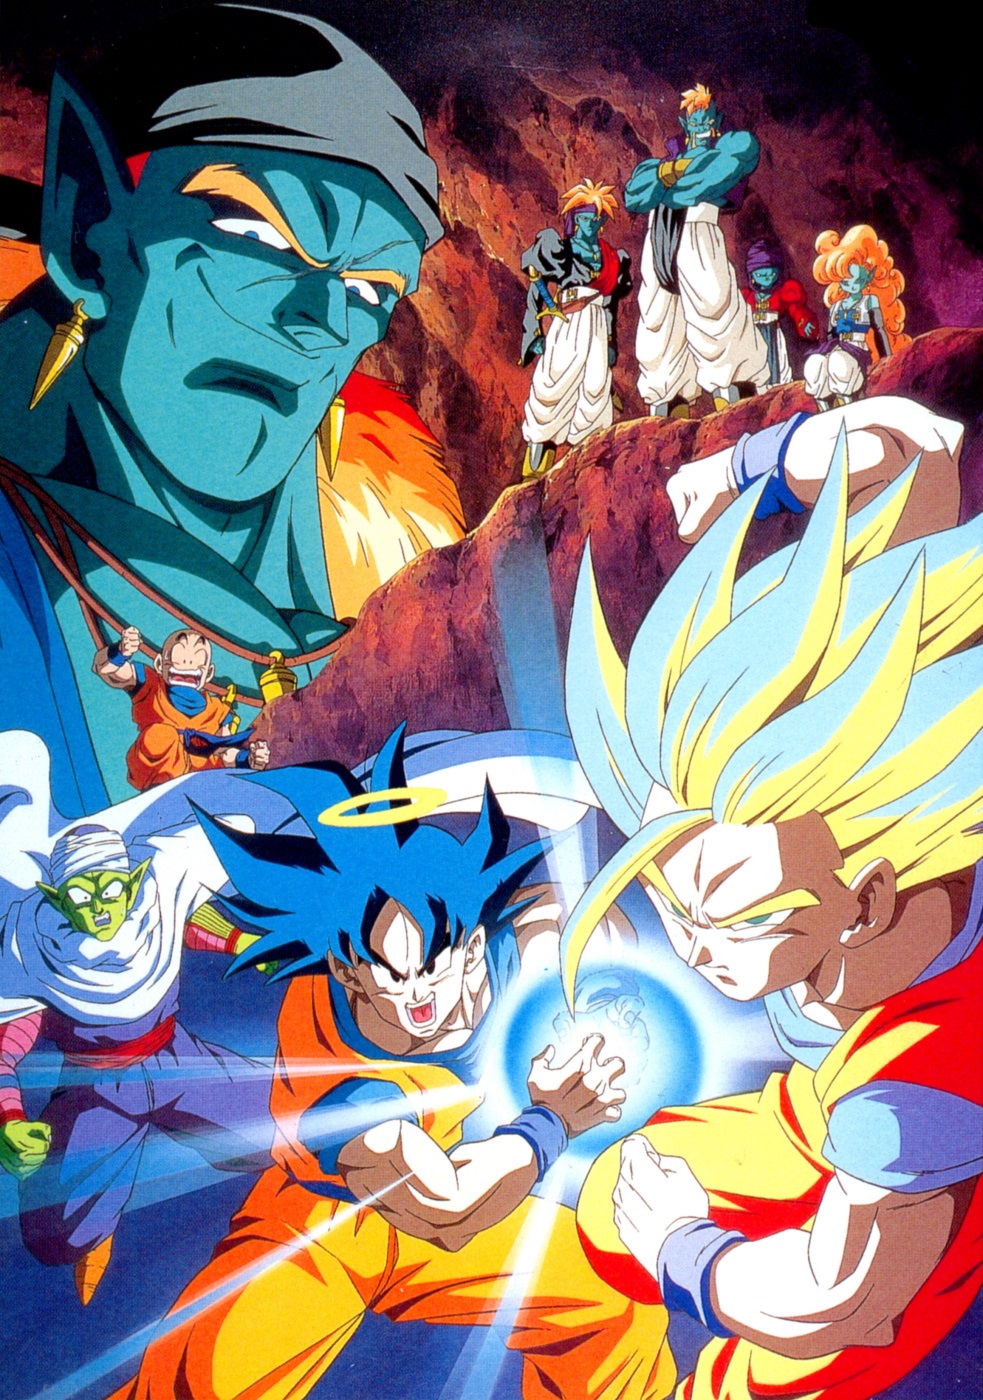 Animador de Dragon Ball GT explica origem do design de Goku SSJ 4